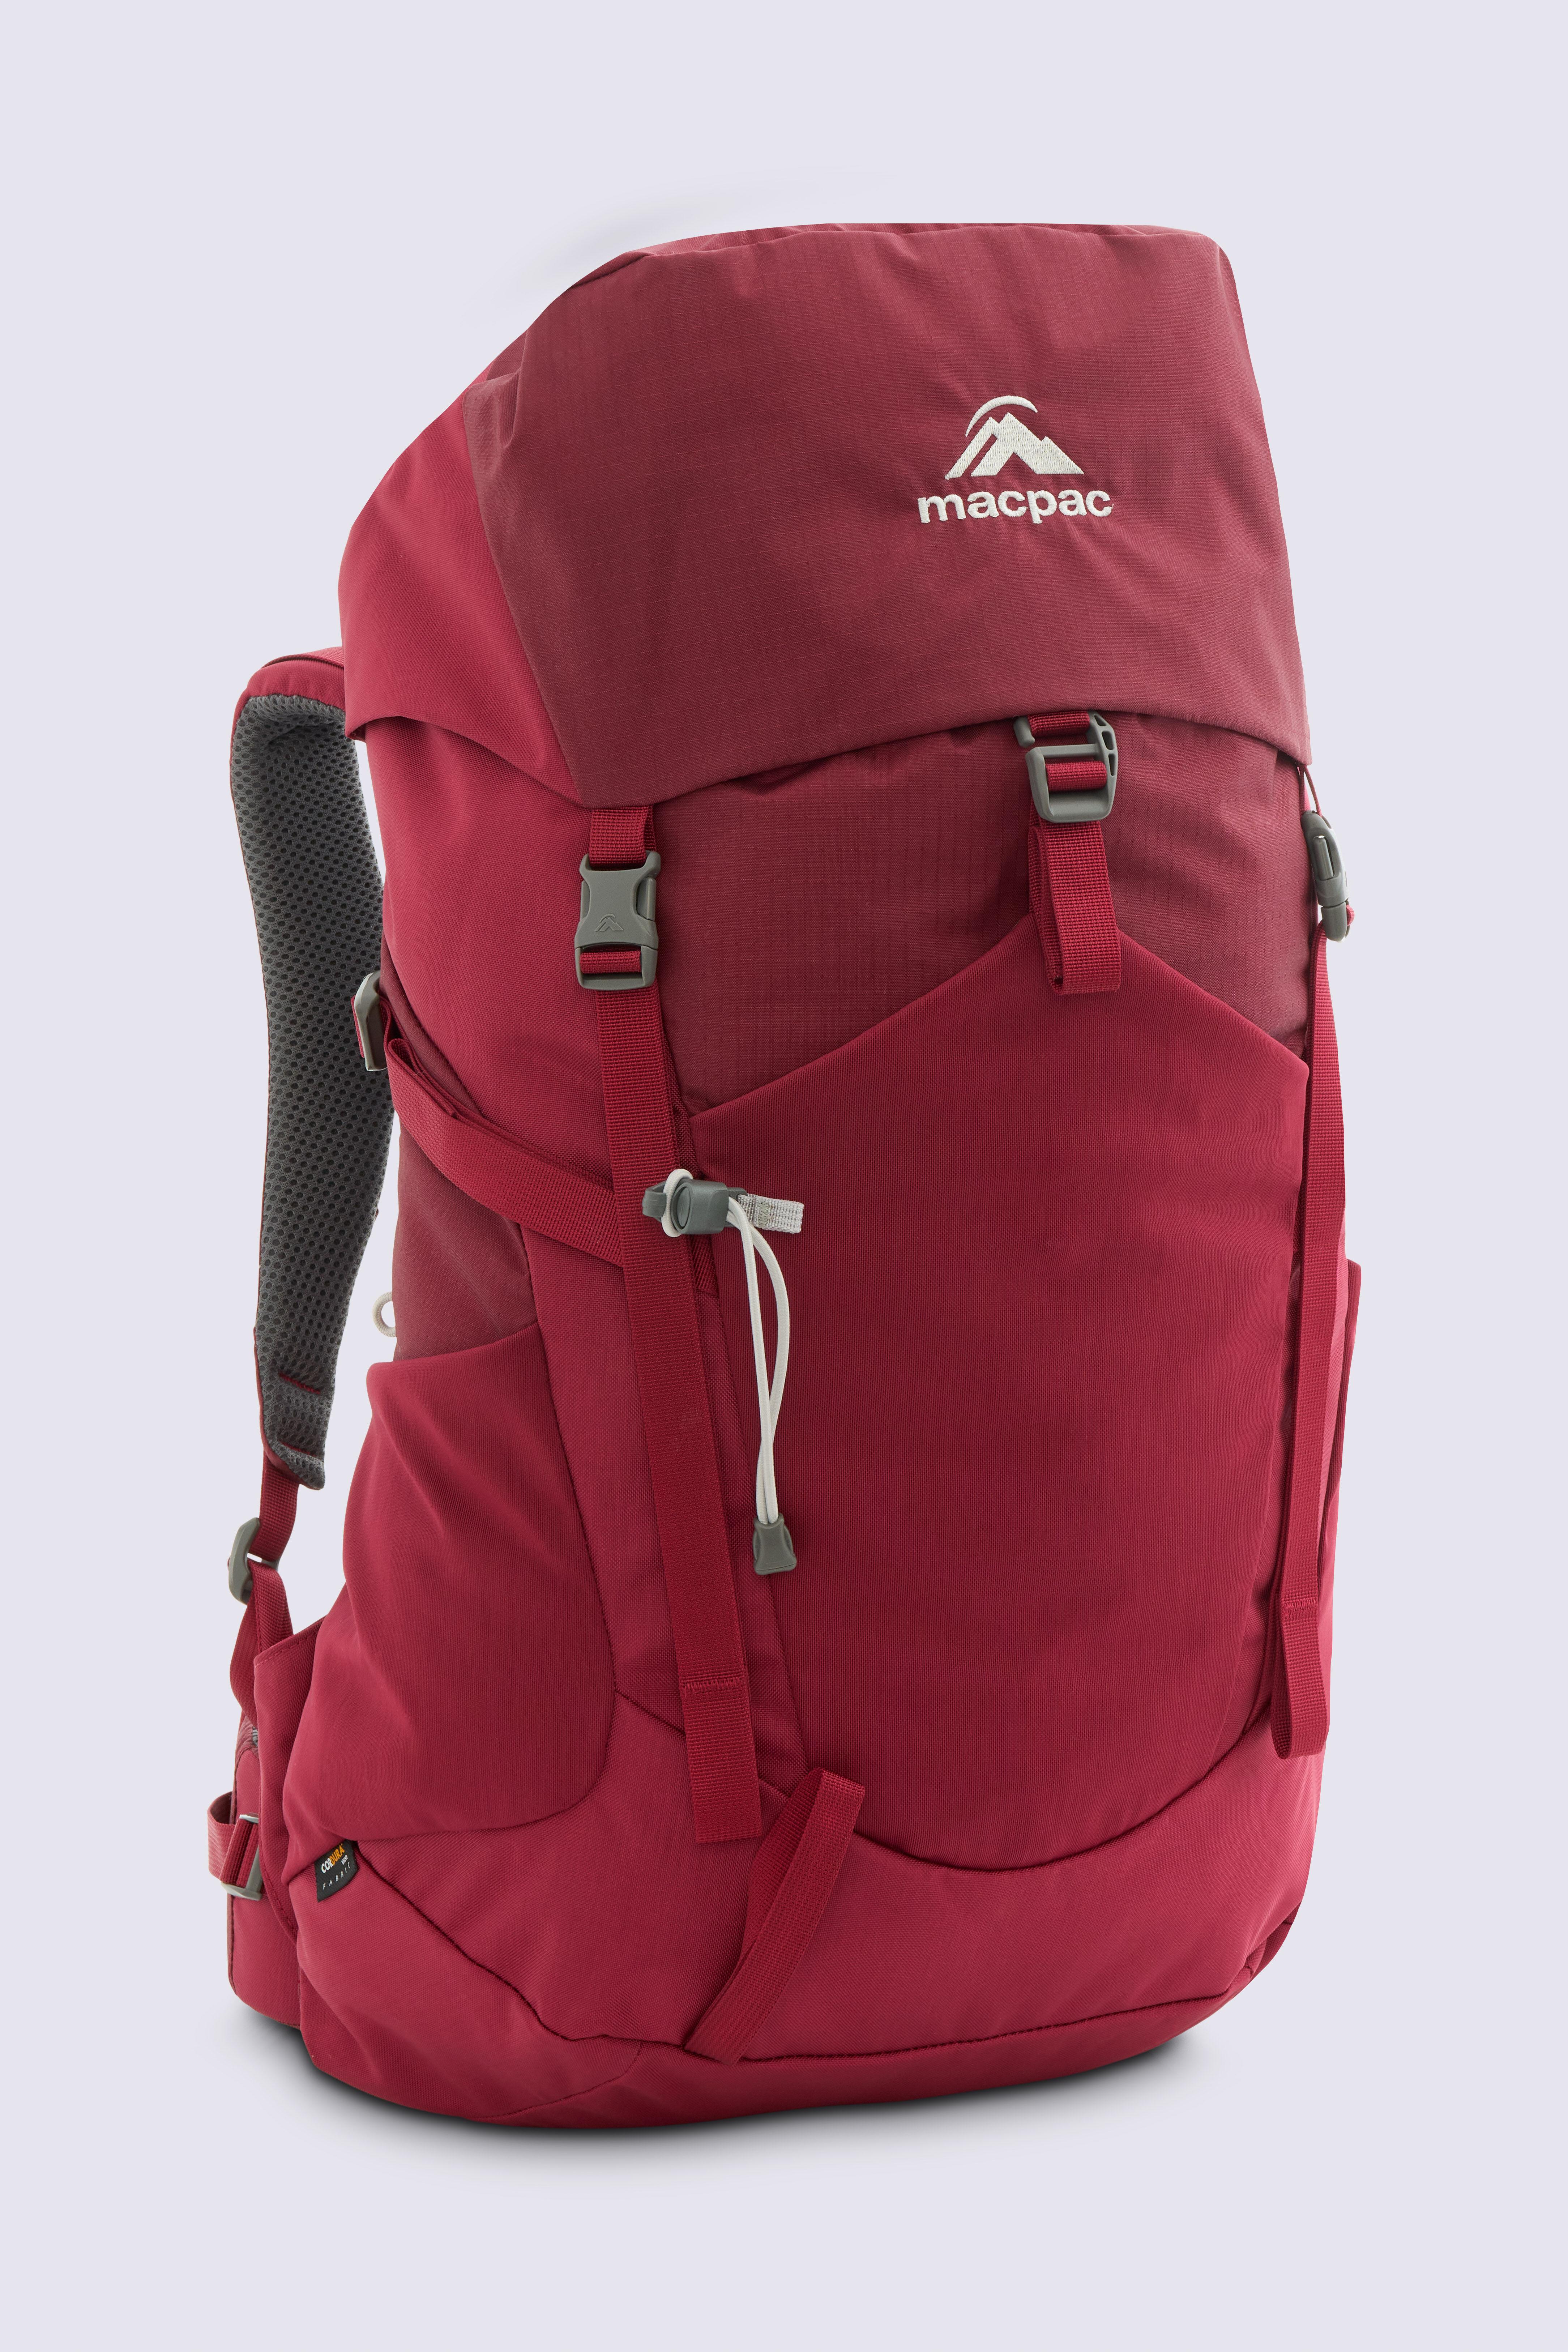 Macpac Torlesse 30L Junior Hiking Backpack | Macpac